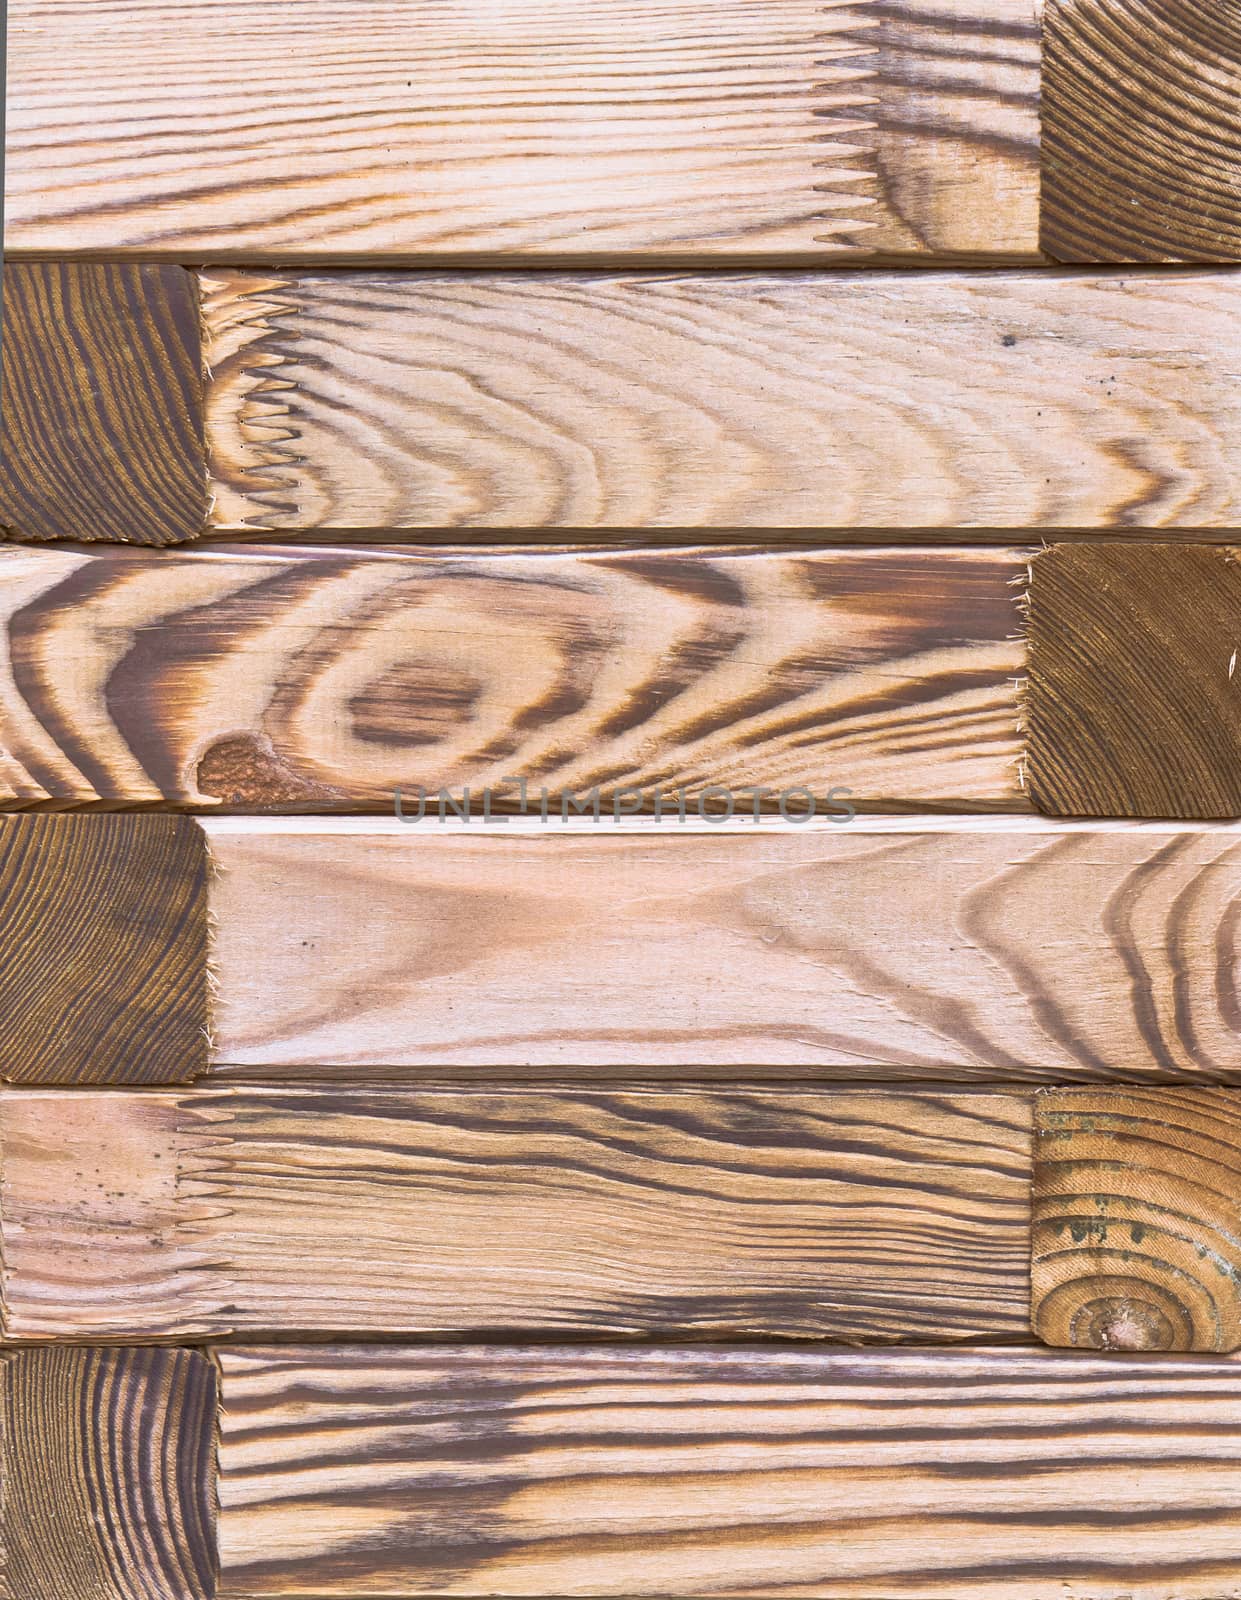 Wooden panels by trgowanlock